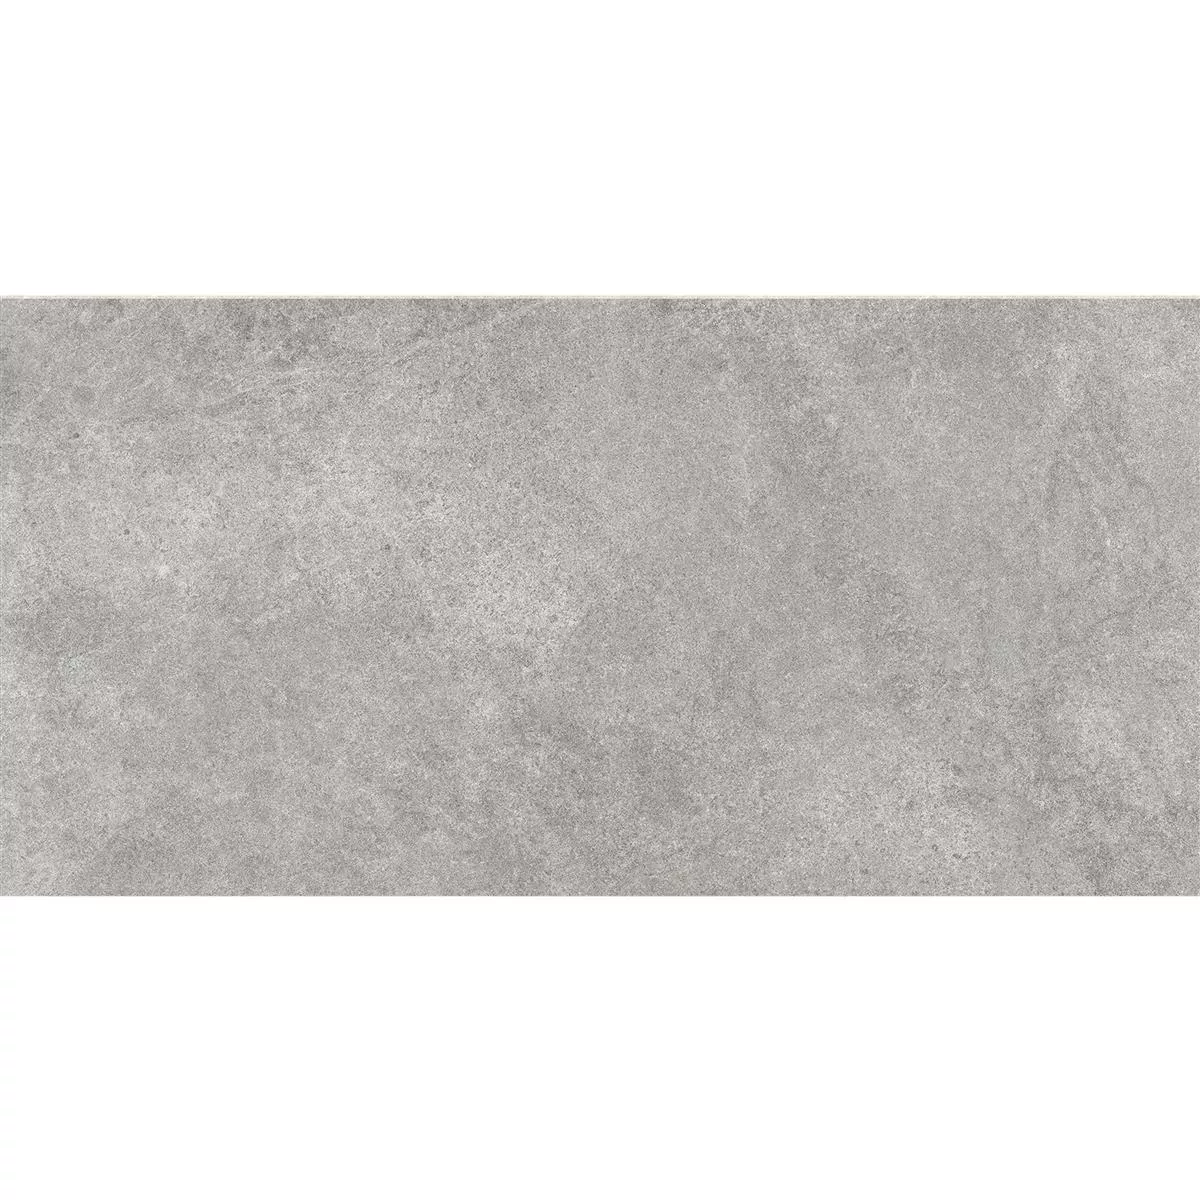 Floor Tiles Montana Unglazed Dark Grey 30x60cm / R10B